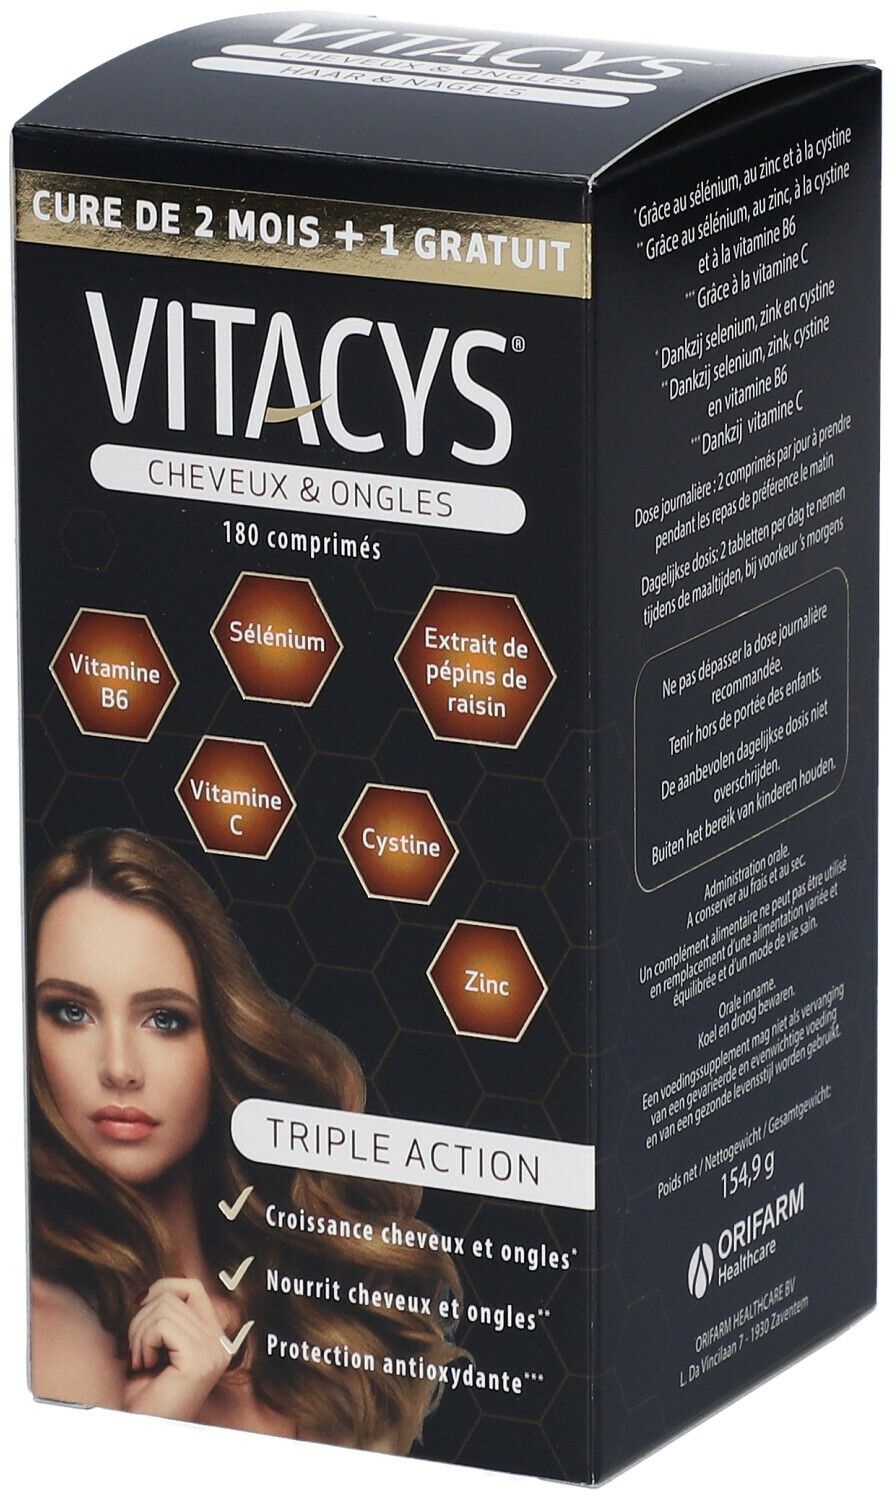 Vitacys Cheveux & Ongles +1 Mois Gratuit 180 pc(s) capsule(s)